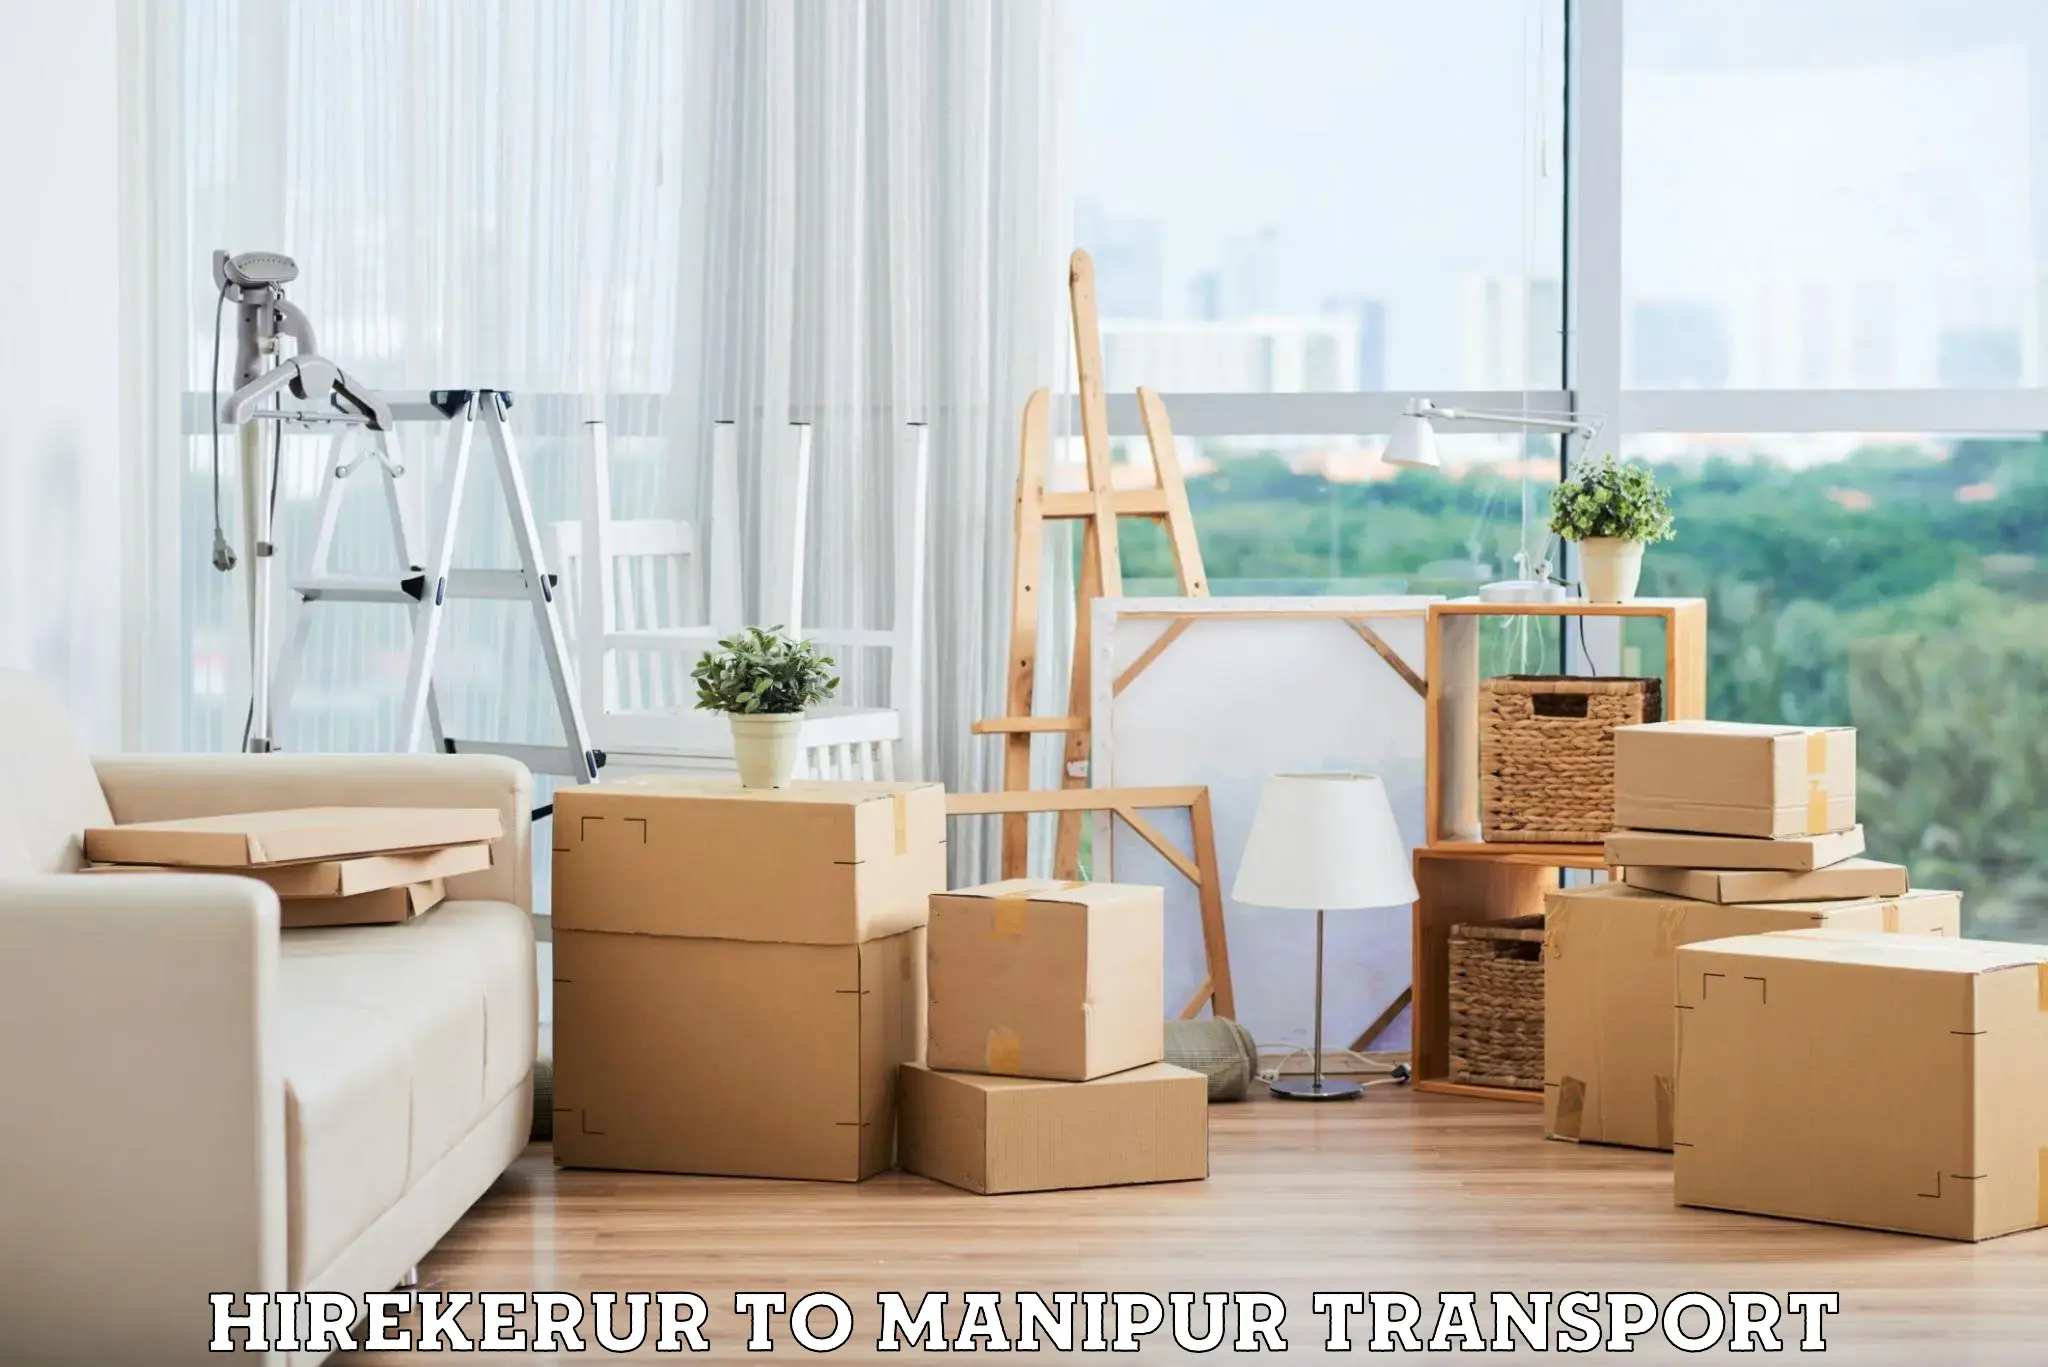 Furniture transport service Hirekerur to NIT Manipur